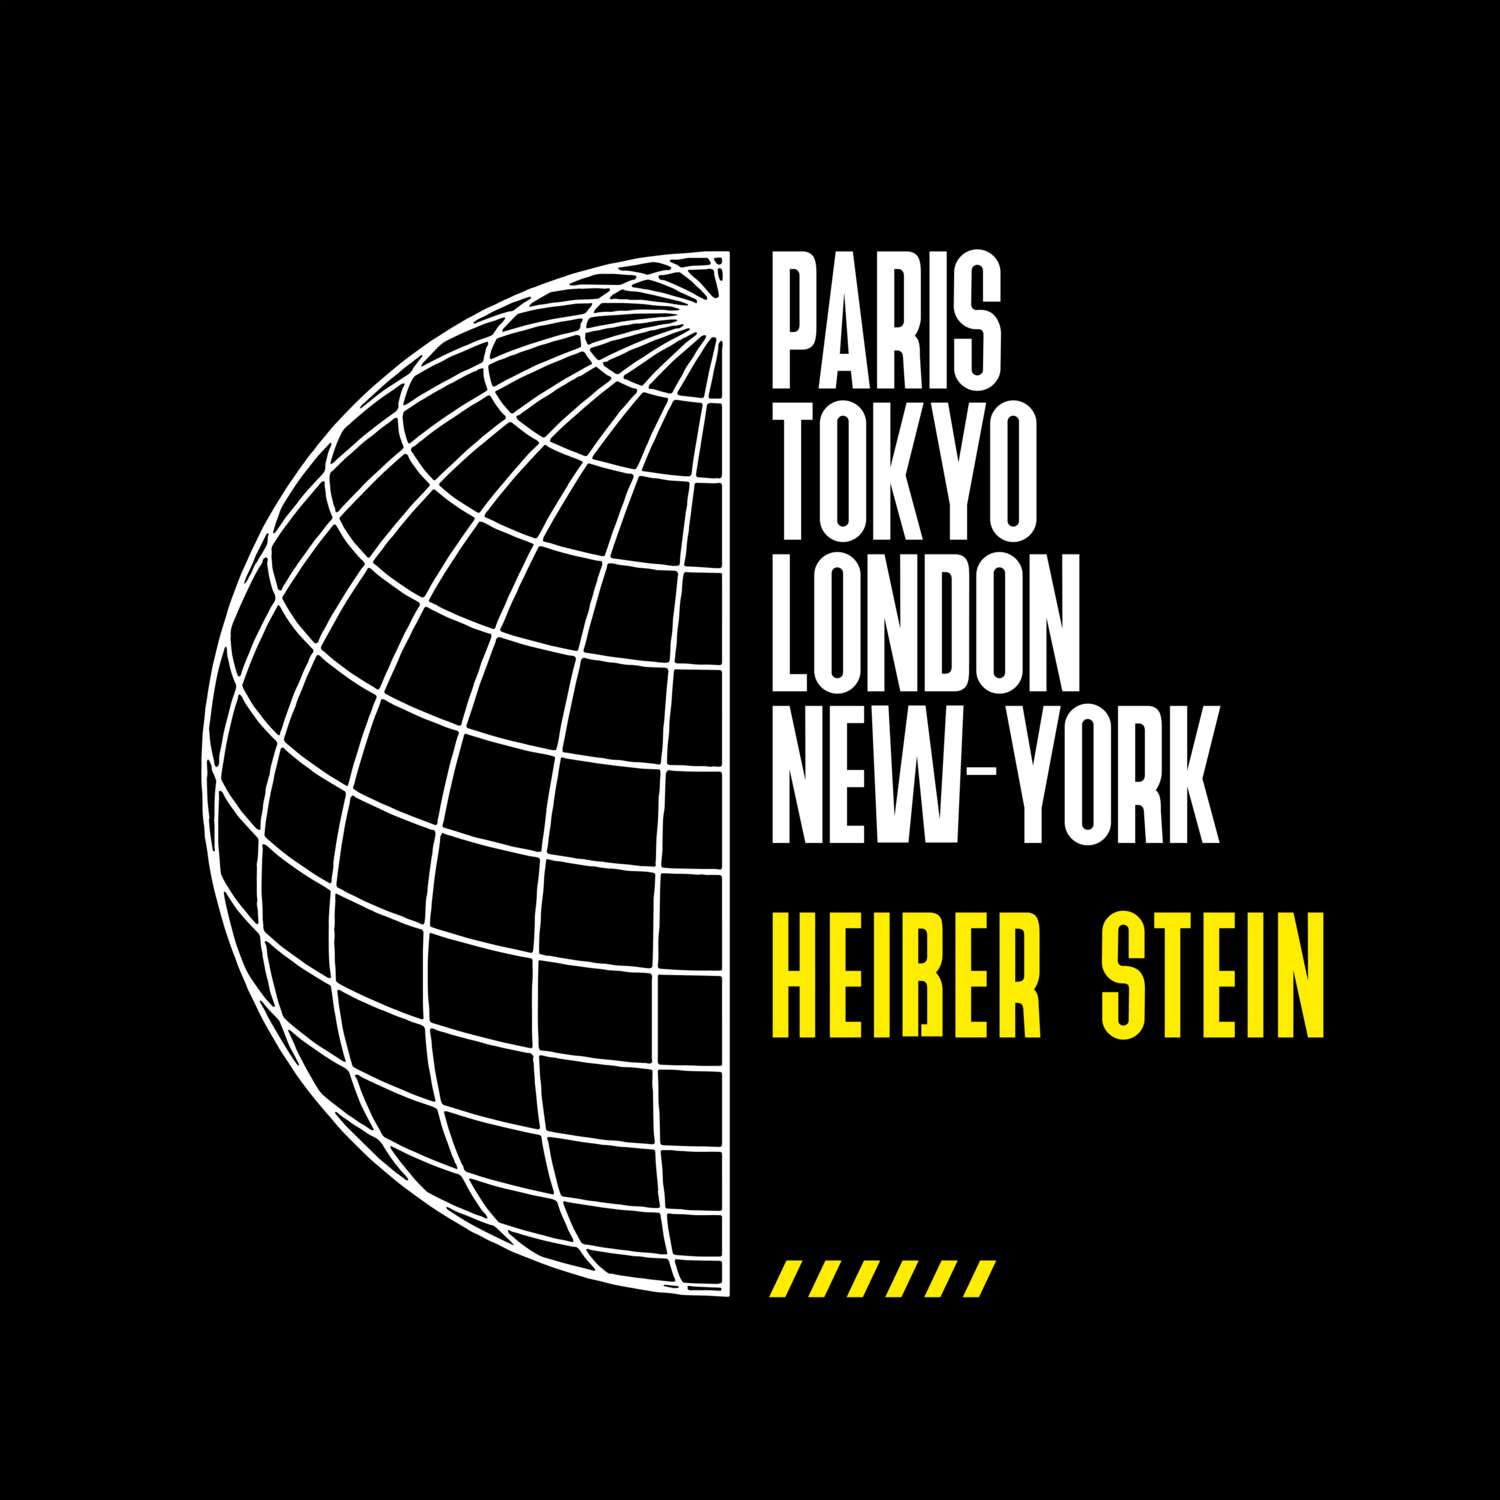 Heißer Stein T-Shirt »Paris Tokyo London«